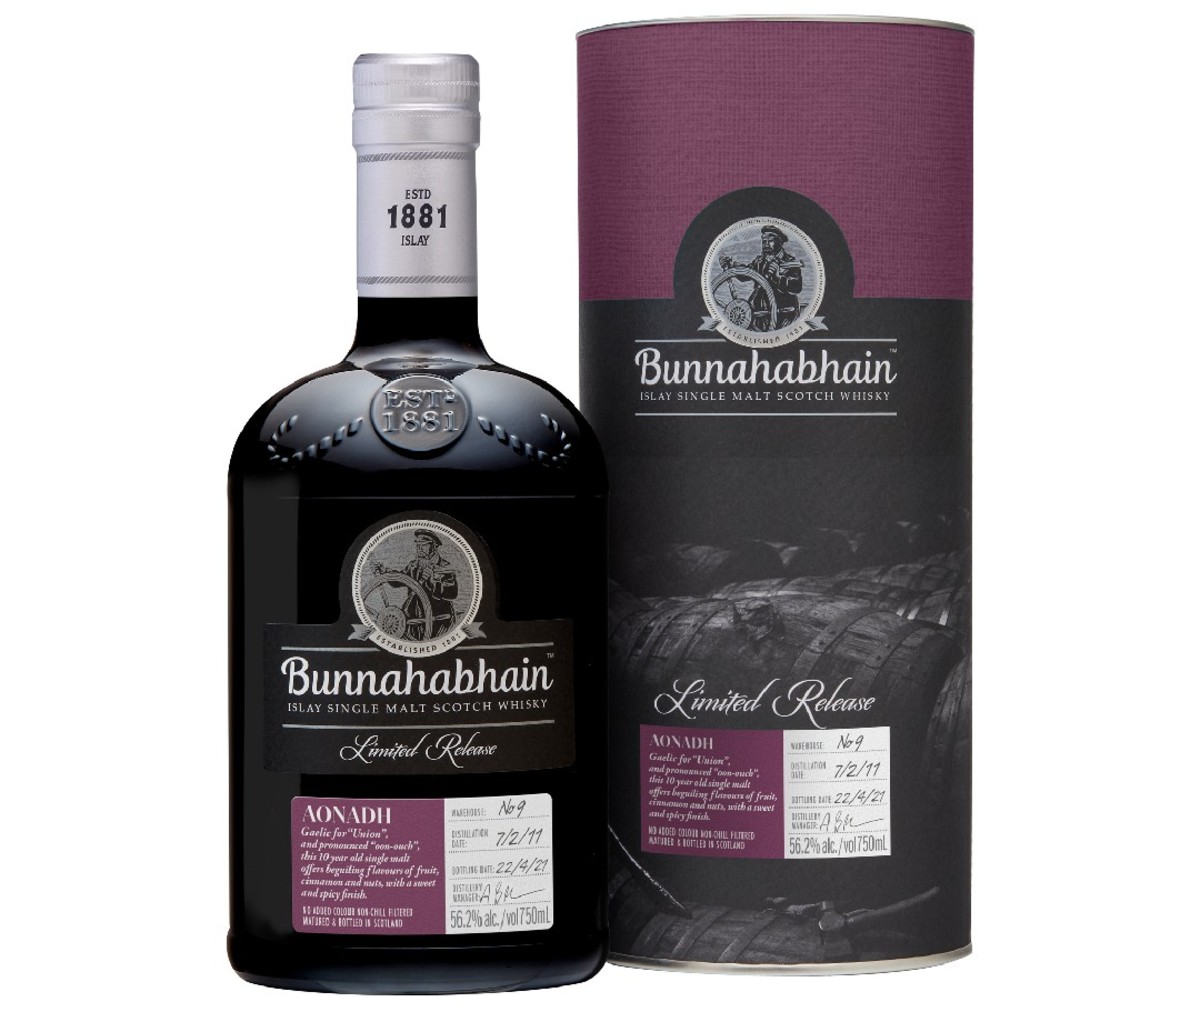 Bottle and box container of Bunnahabhain Aonadh Single Malt Scotch Whisky